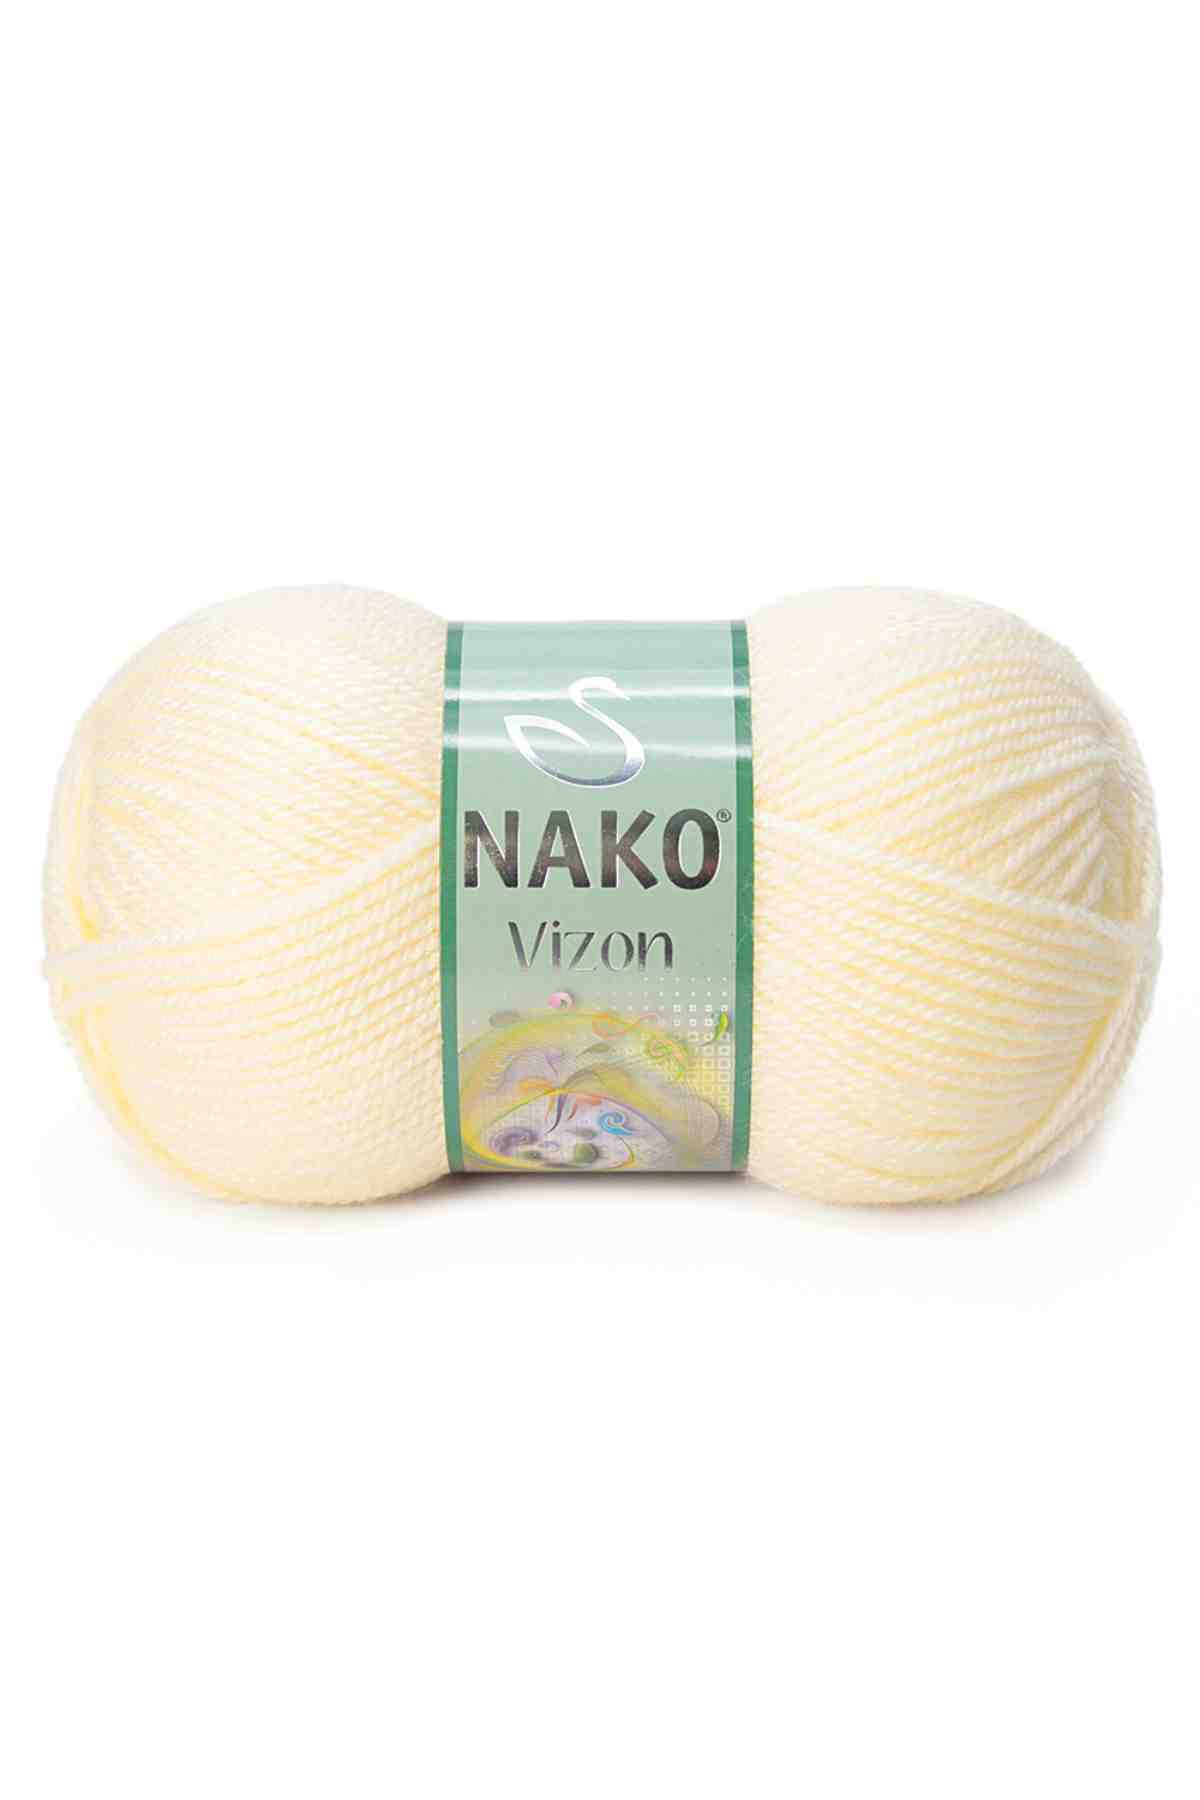 Nako Vizon Acrylic Yarn